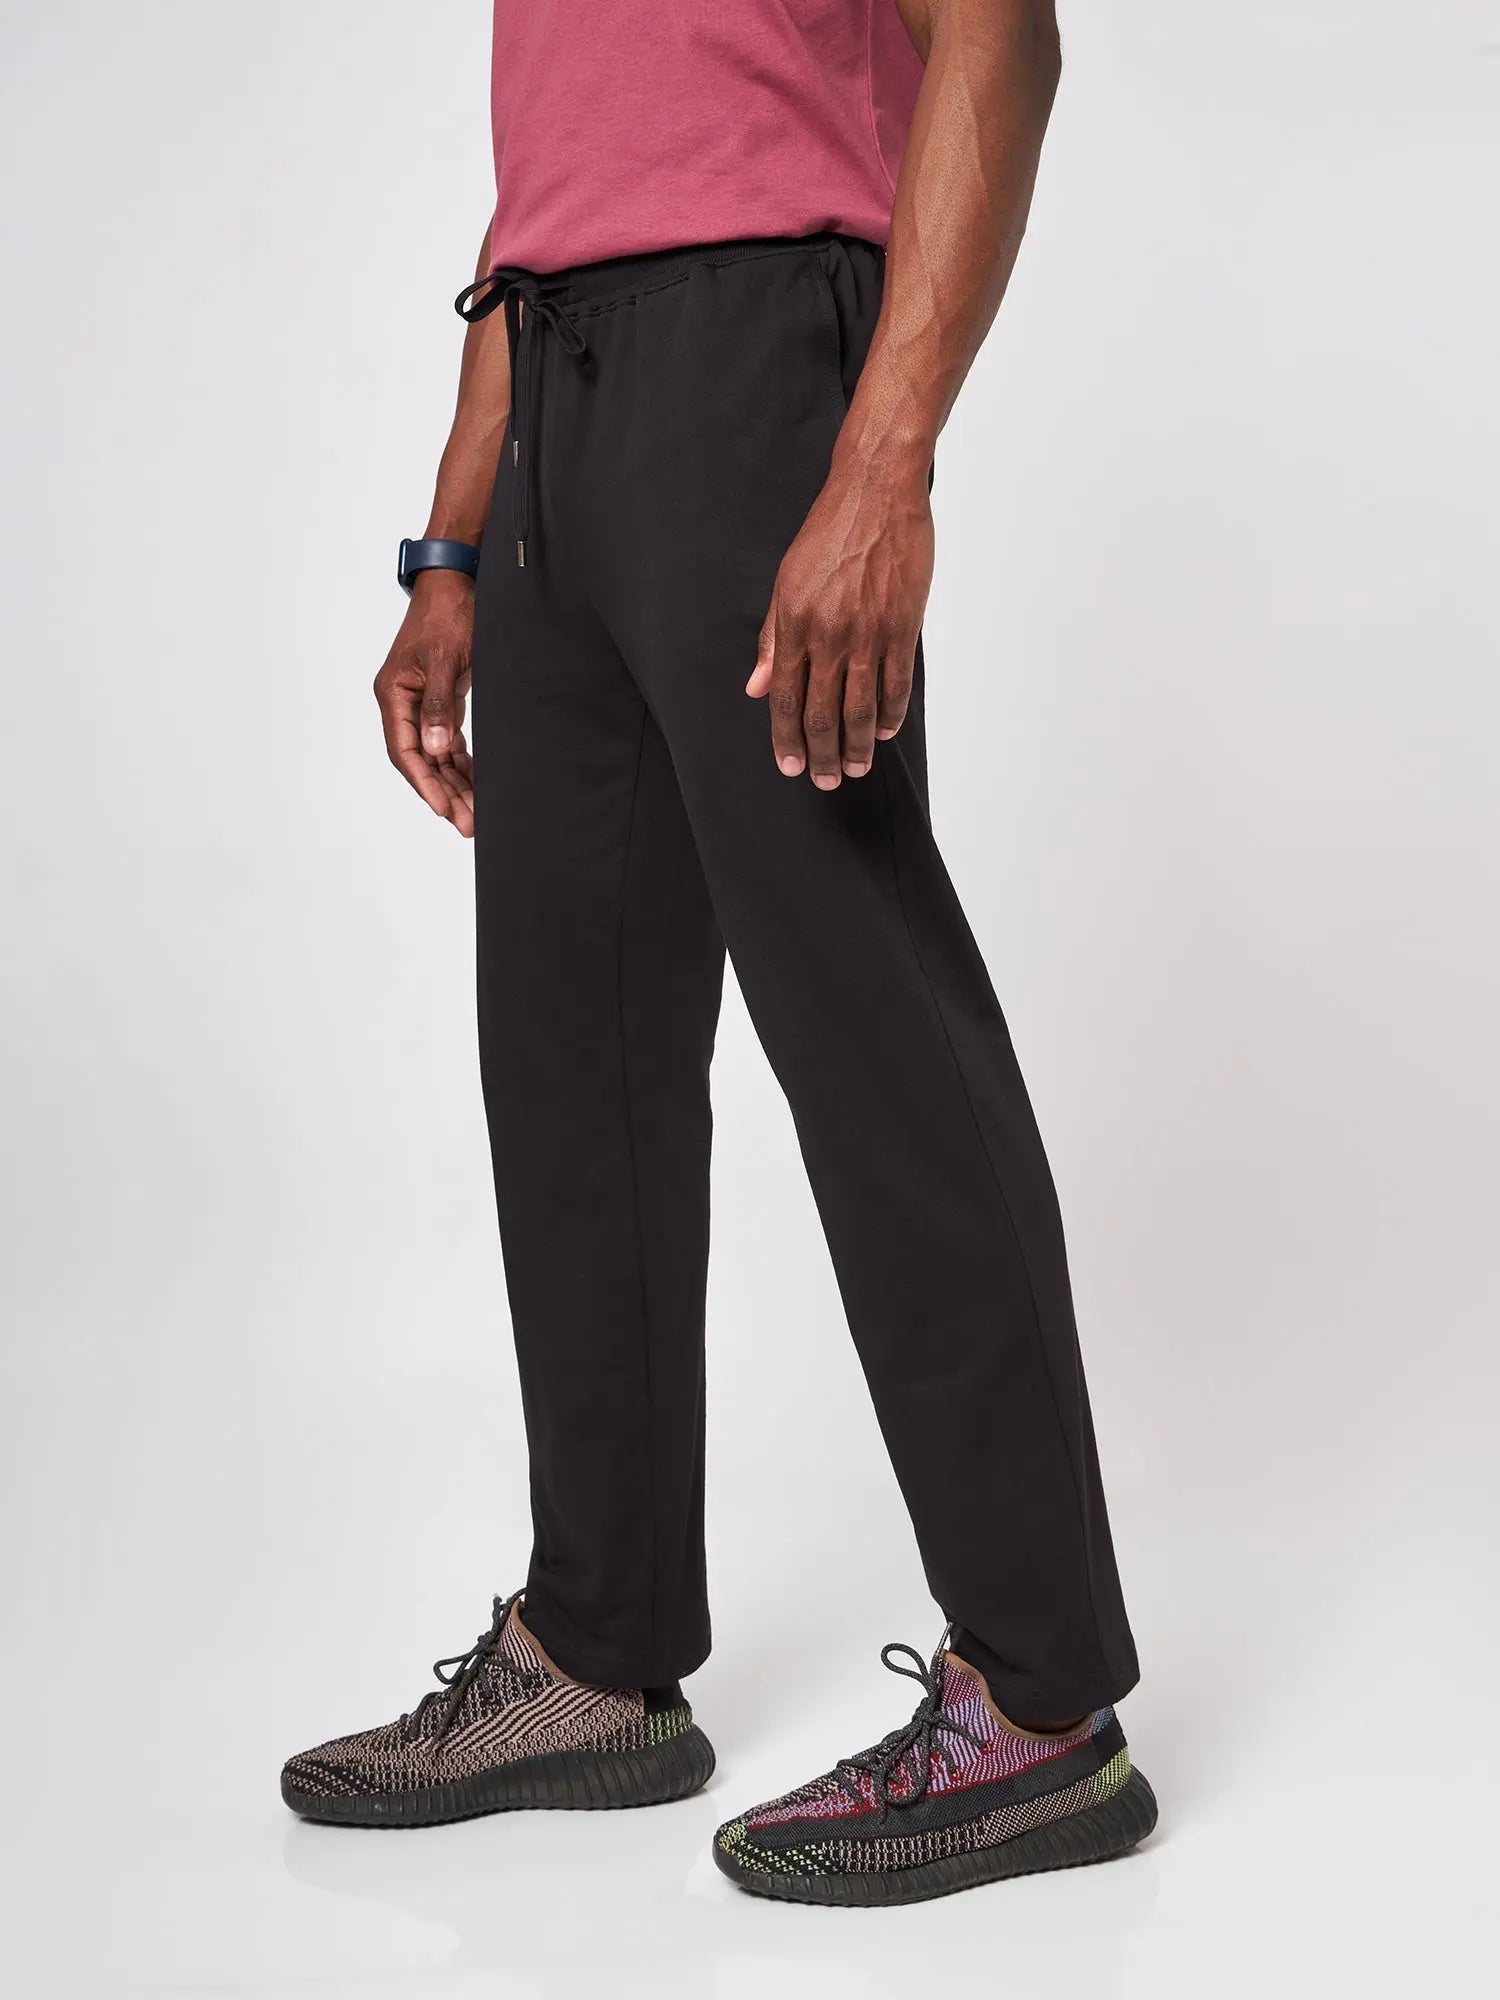 Black Flare Slit Leggings - CAVA athleisure– CAVA Athleisure Pvt Ltd